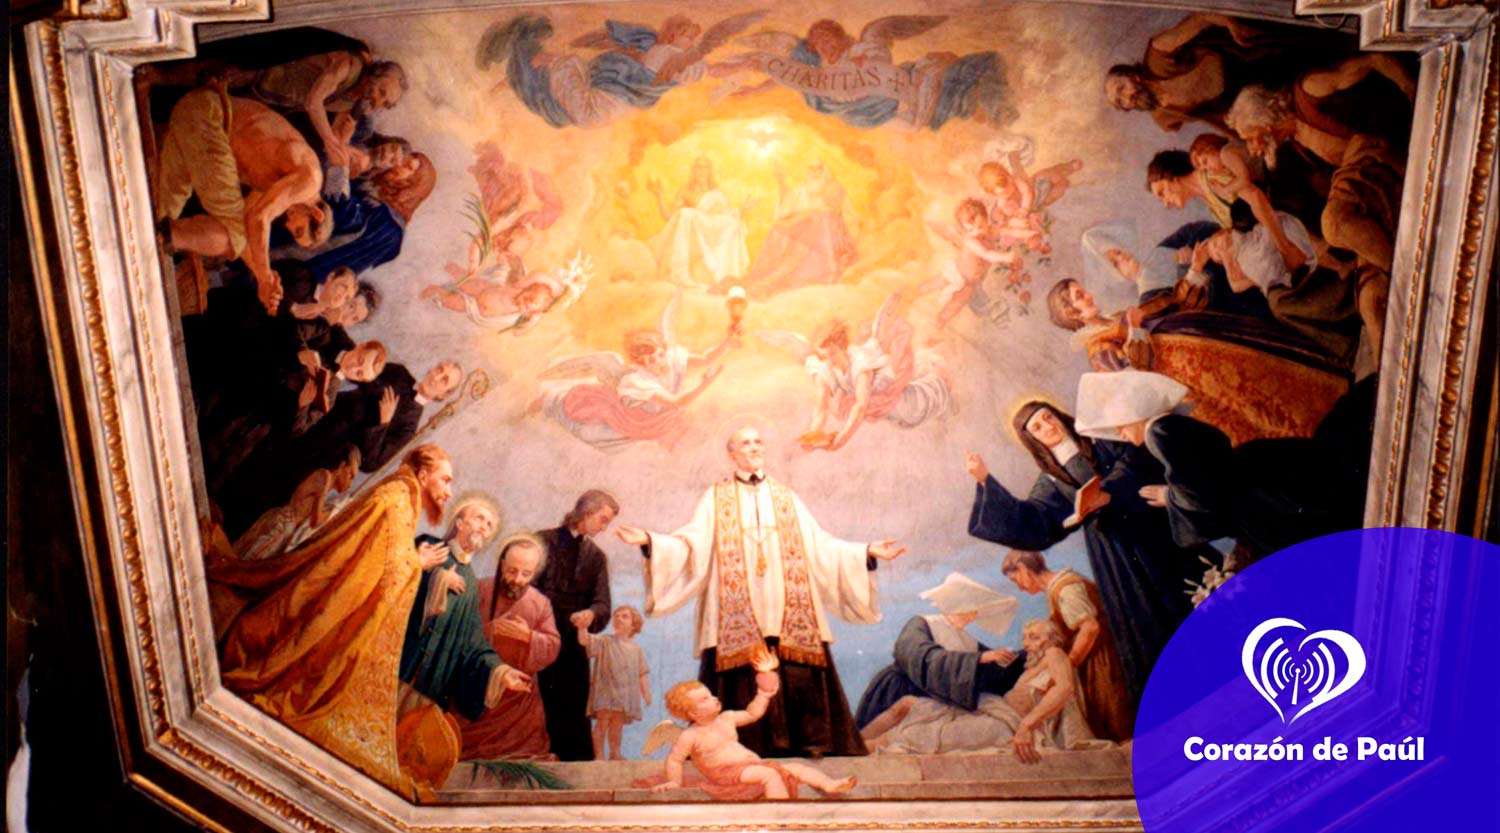 Hace 282 canonizaron a San Vicente de Paúl - Corazón de Paúl